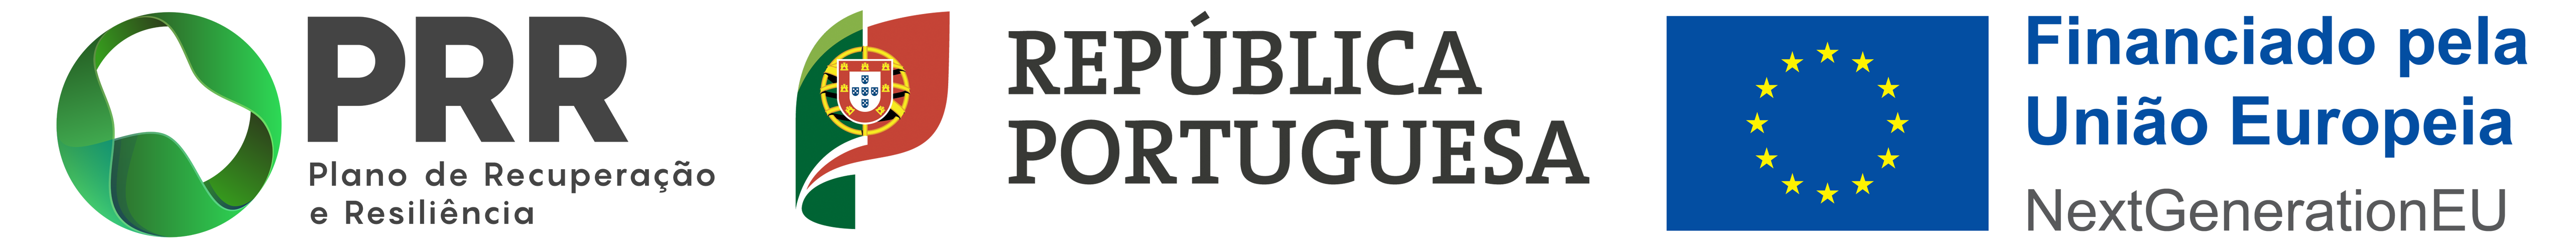 Logos Barra de Financiamento PRR combo 3 logos transparente